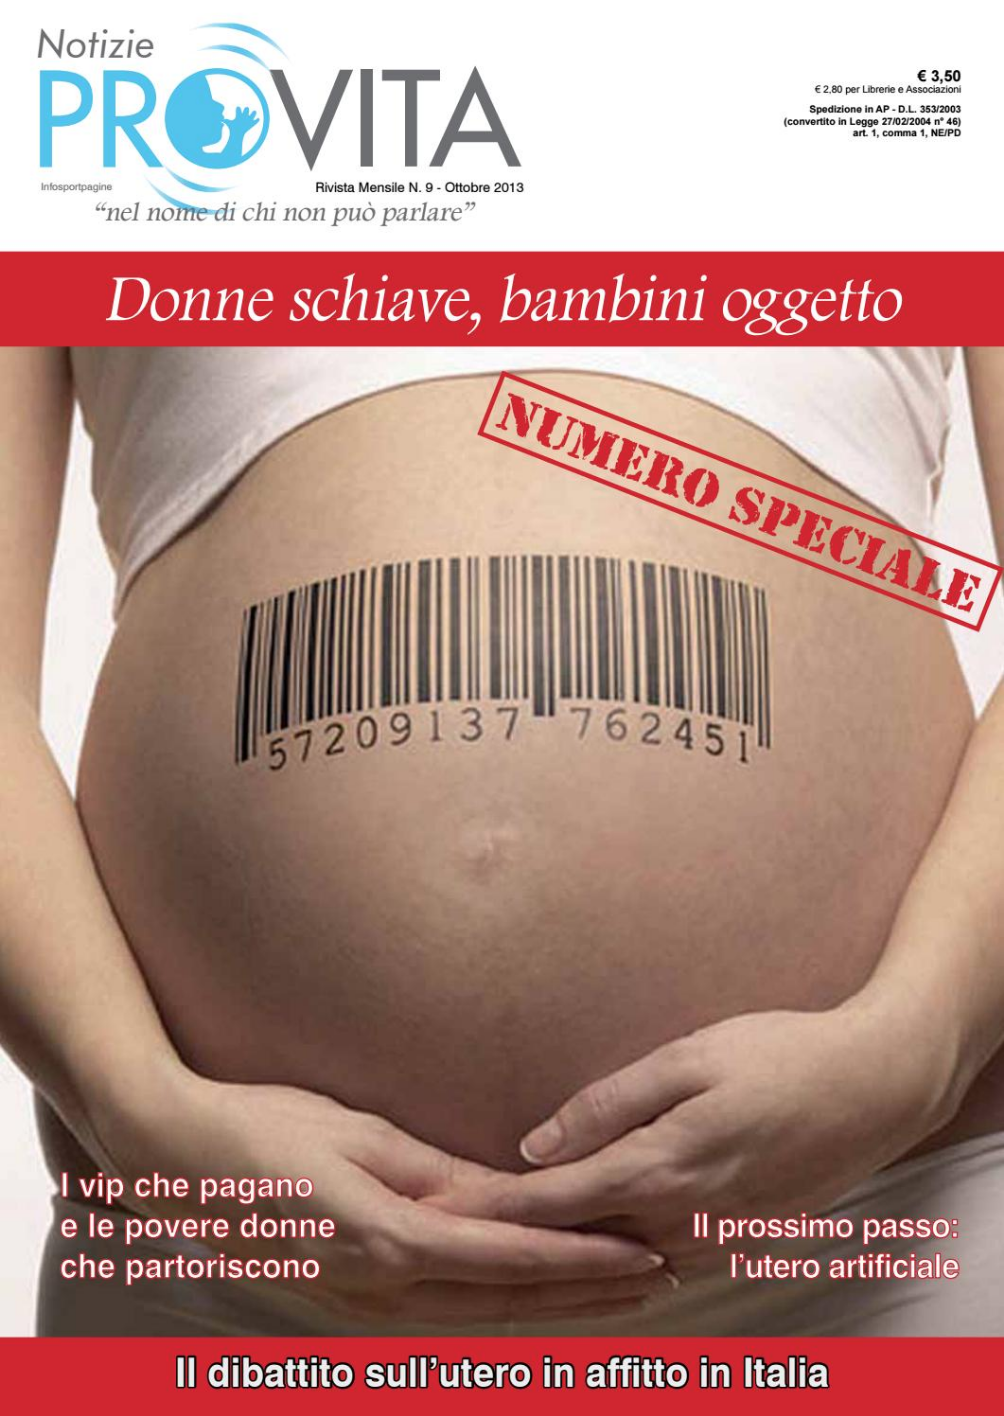 Edizione speciale con un focus sul dibattito, in Italia, che riguarda la pratica dell’utero in affitto